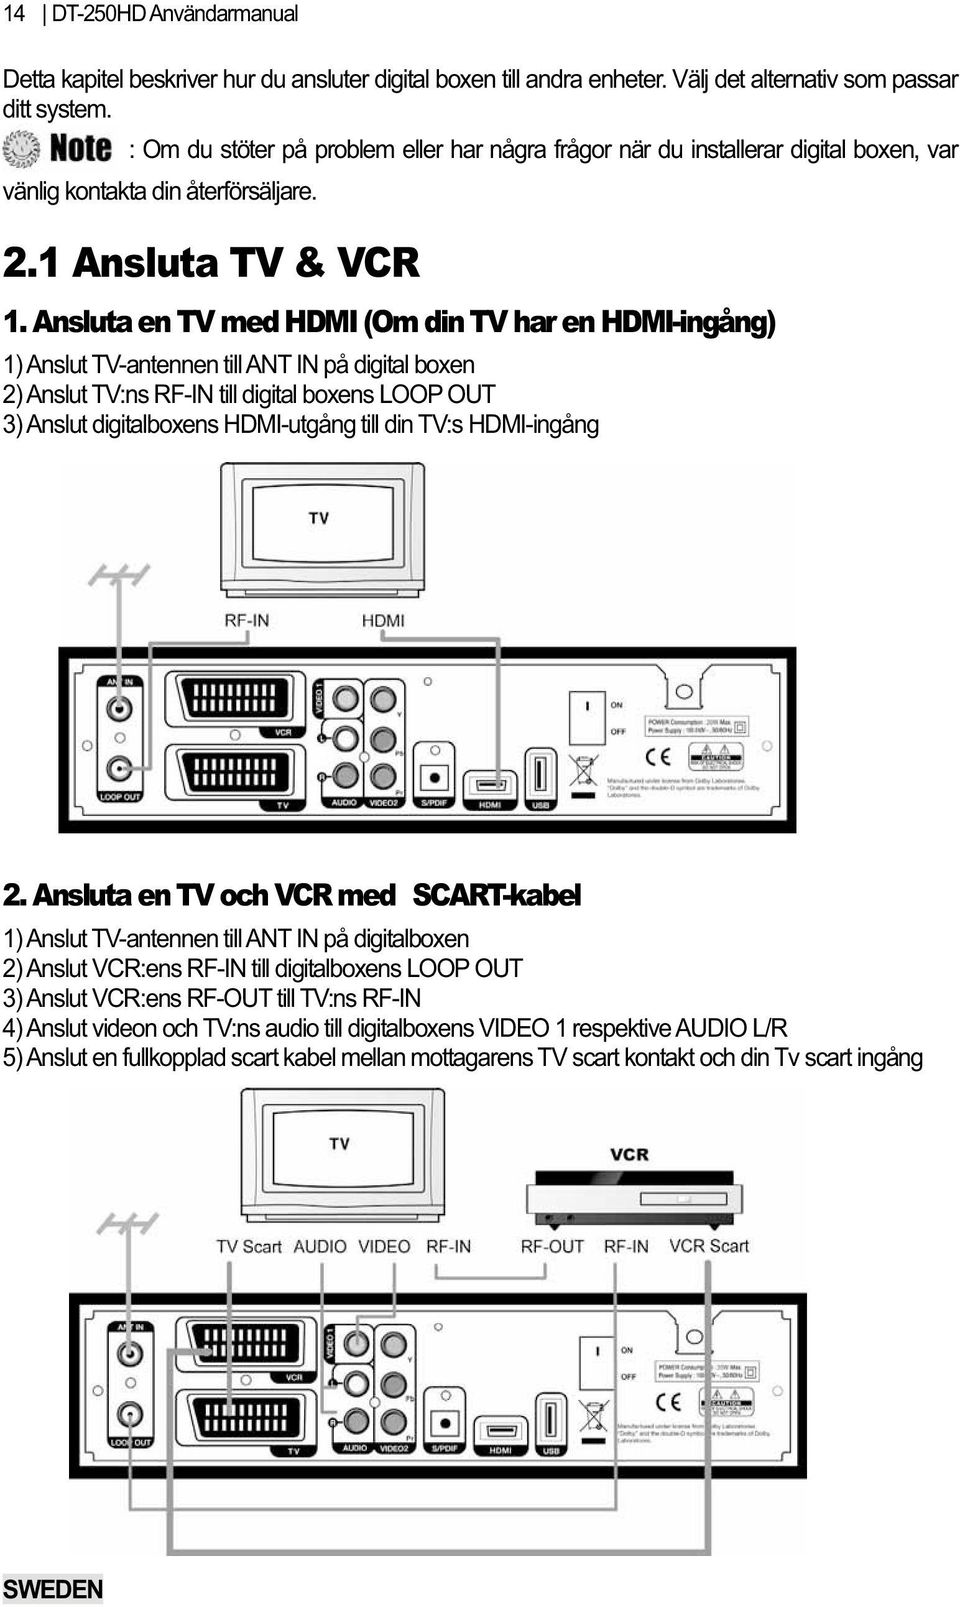 Ansluta en TV med HDMI (Om din TV har en HDMI-ingång) 1) Anslut TV-antennen till ANT IN på digital boxen 2) Anslut TV:ns RF-IN till digital boxens LOOP OUT 3) Anslut digitalboxens HDMI-utgång till